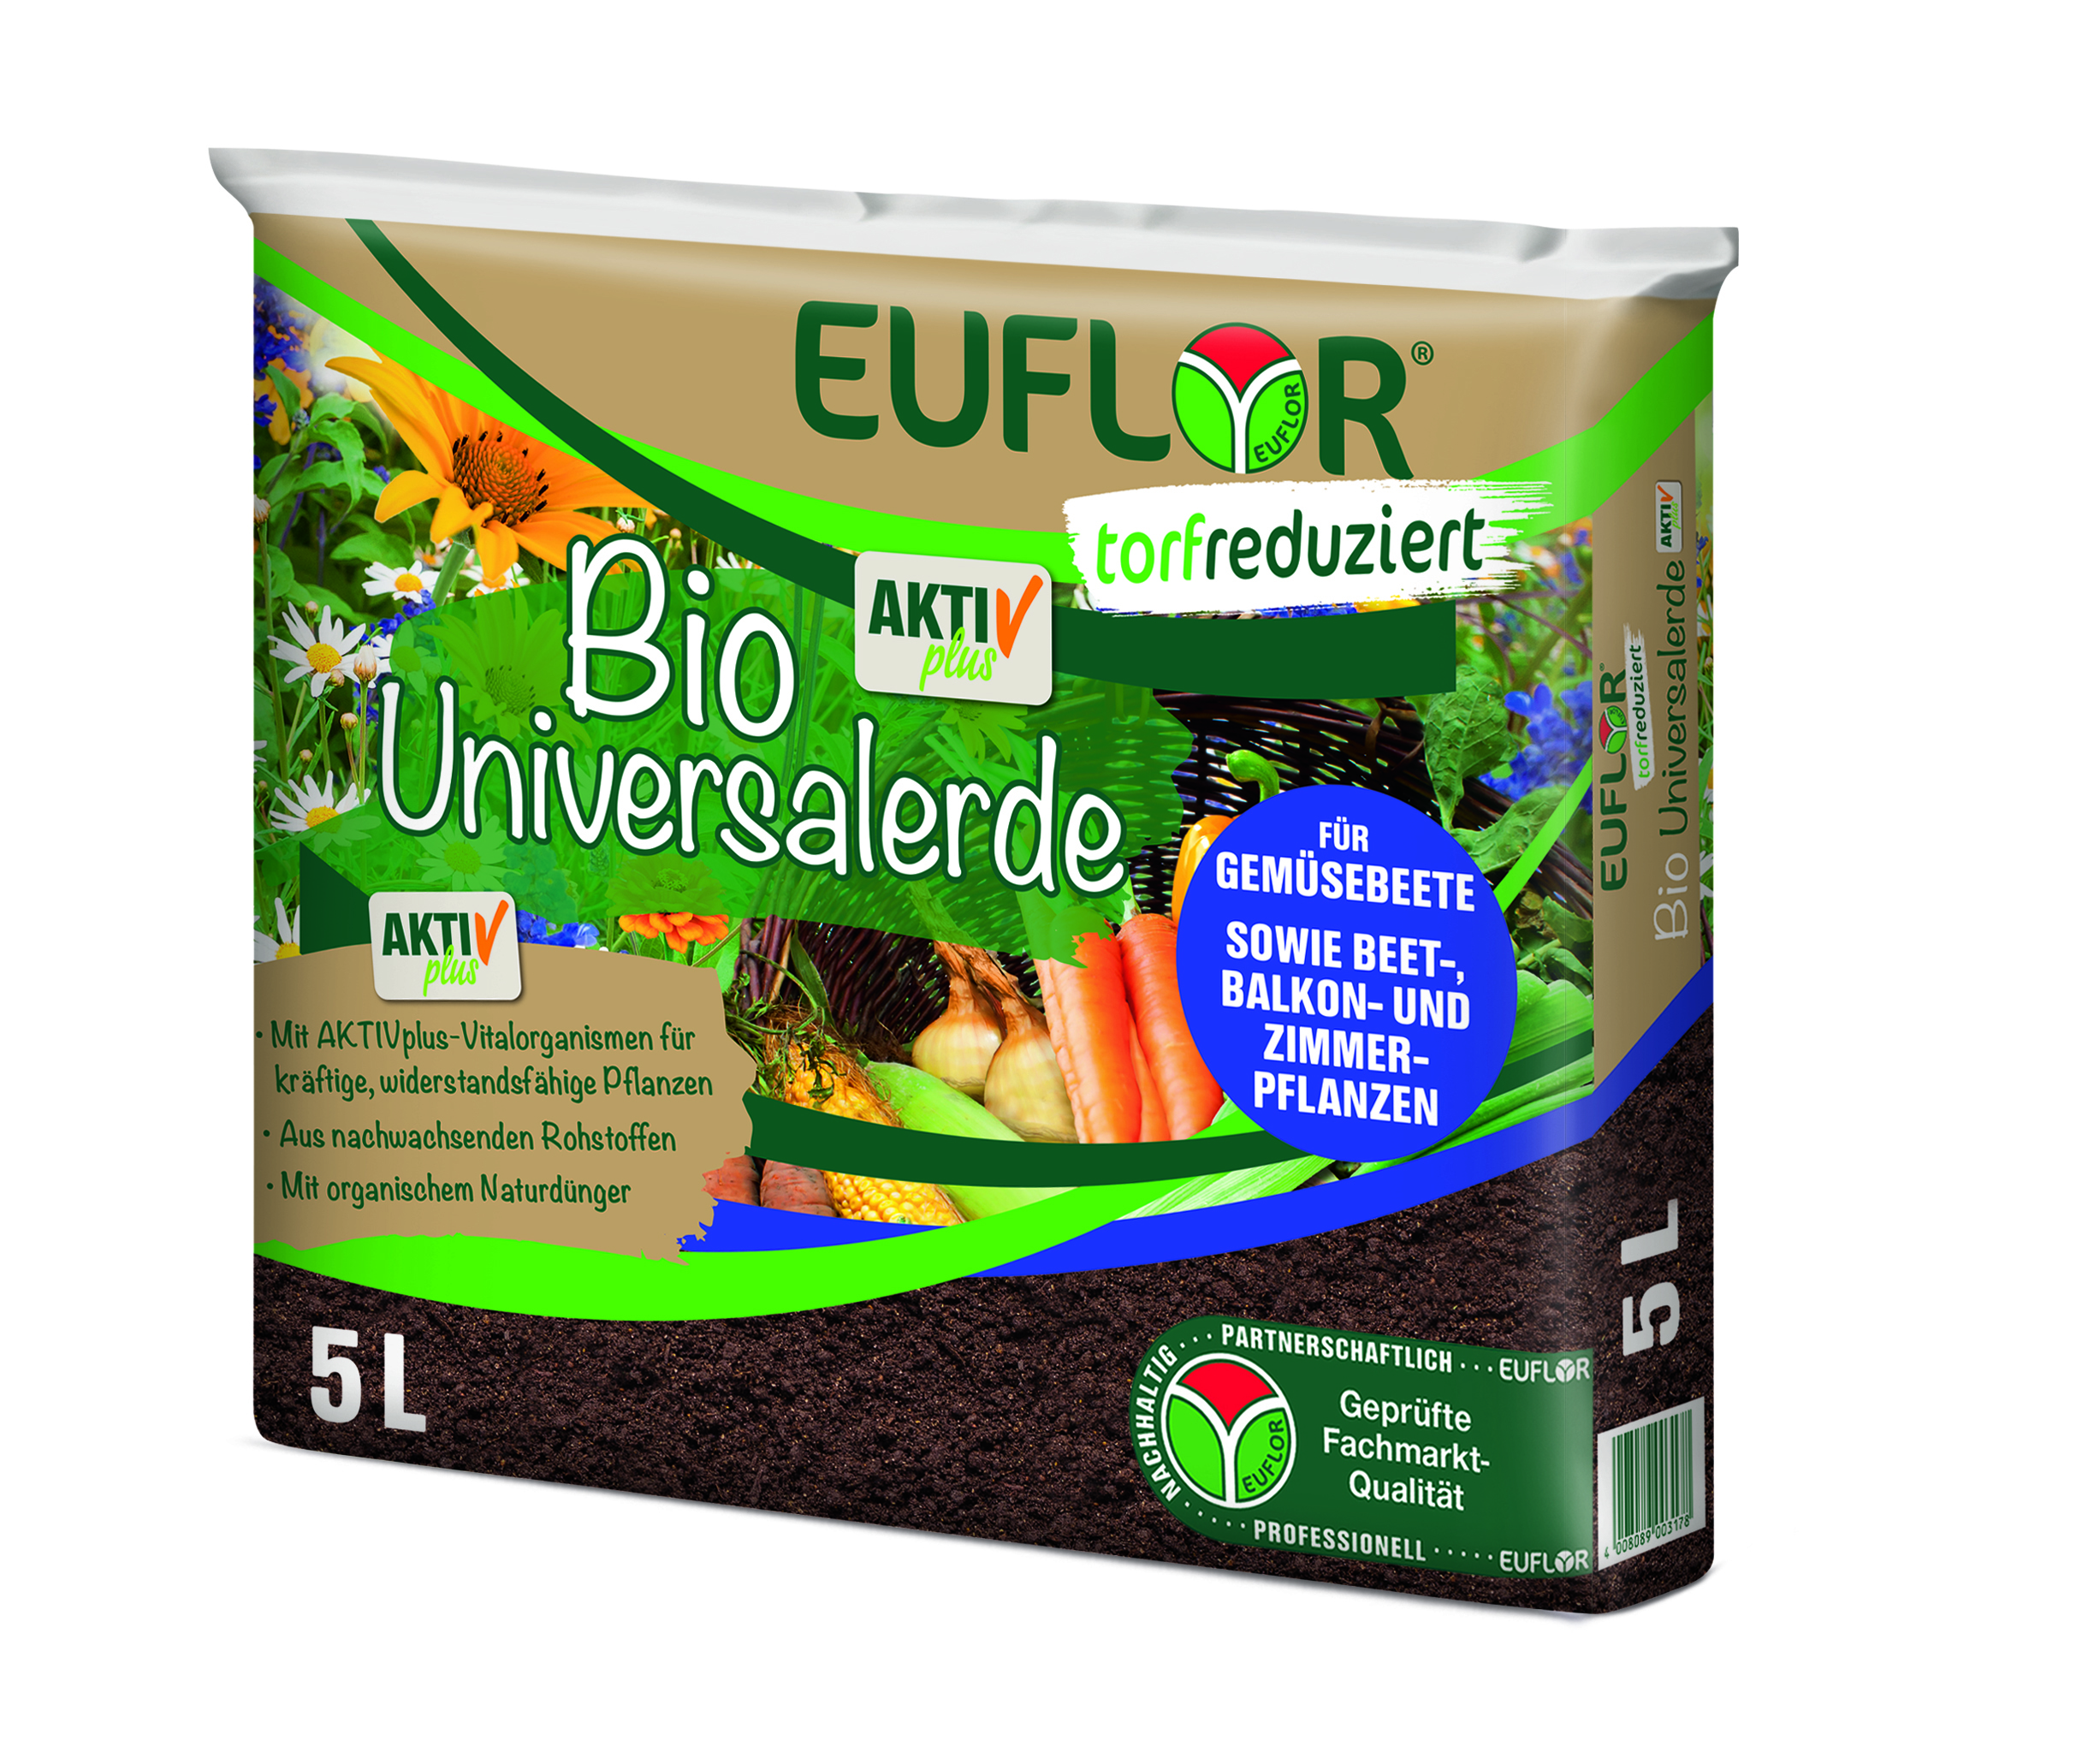 Euflor Bio-Universalerde Aktivplus, 5 L